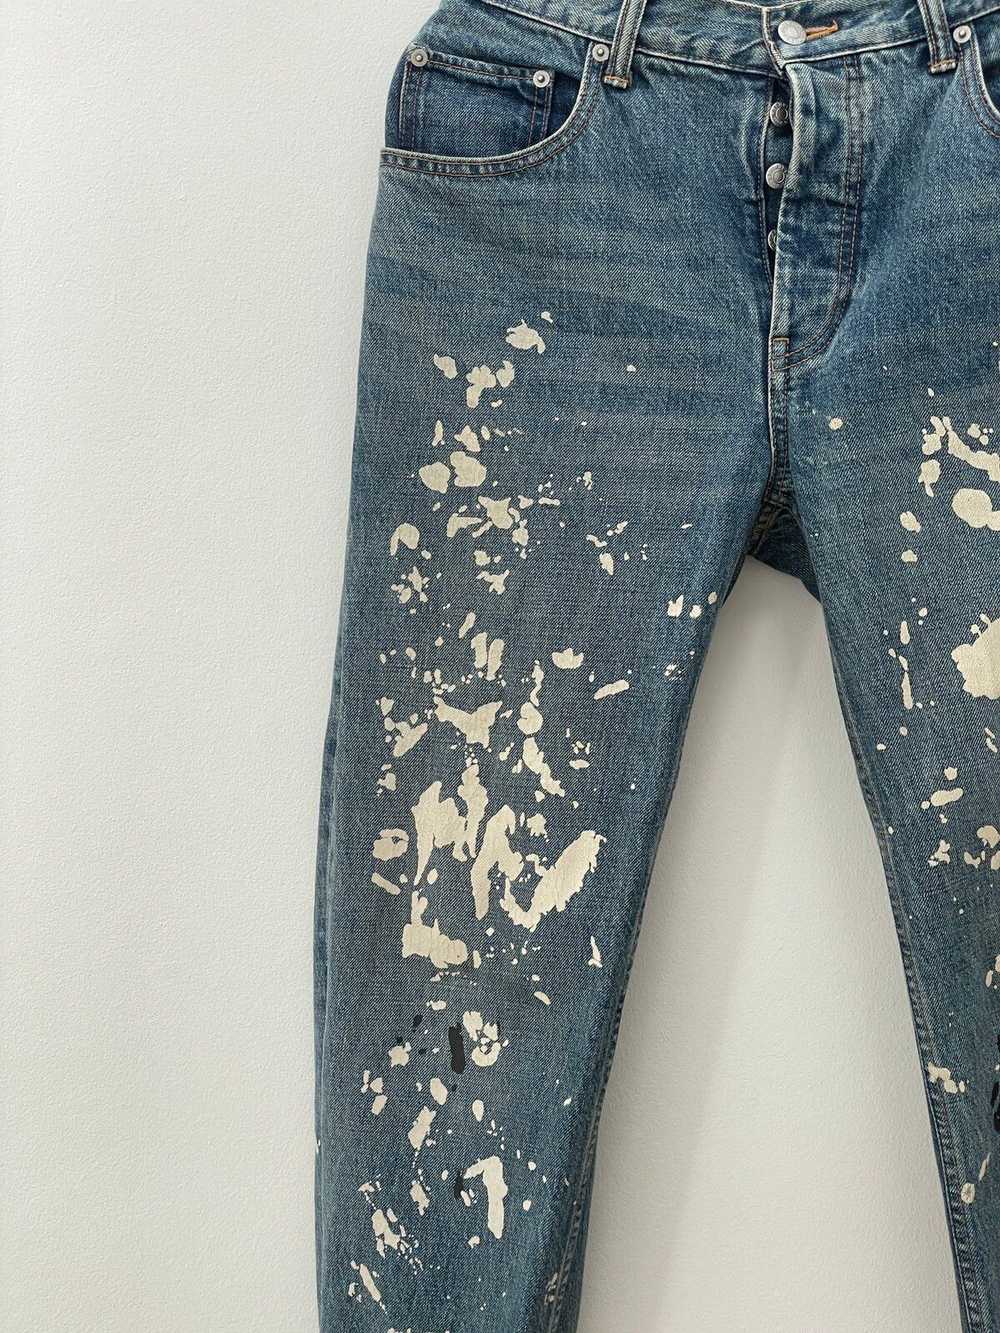 Helmut Lang Helmut Lang 1998 Painter Denim Jeans - image 4